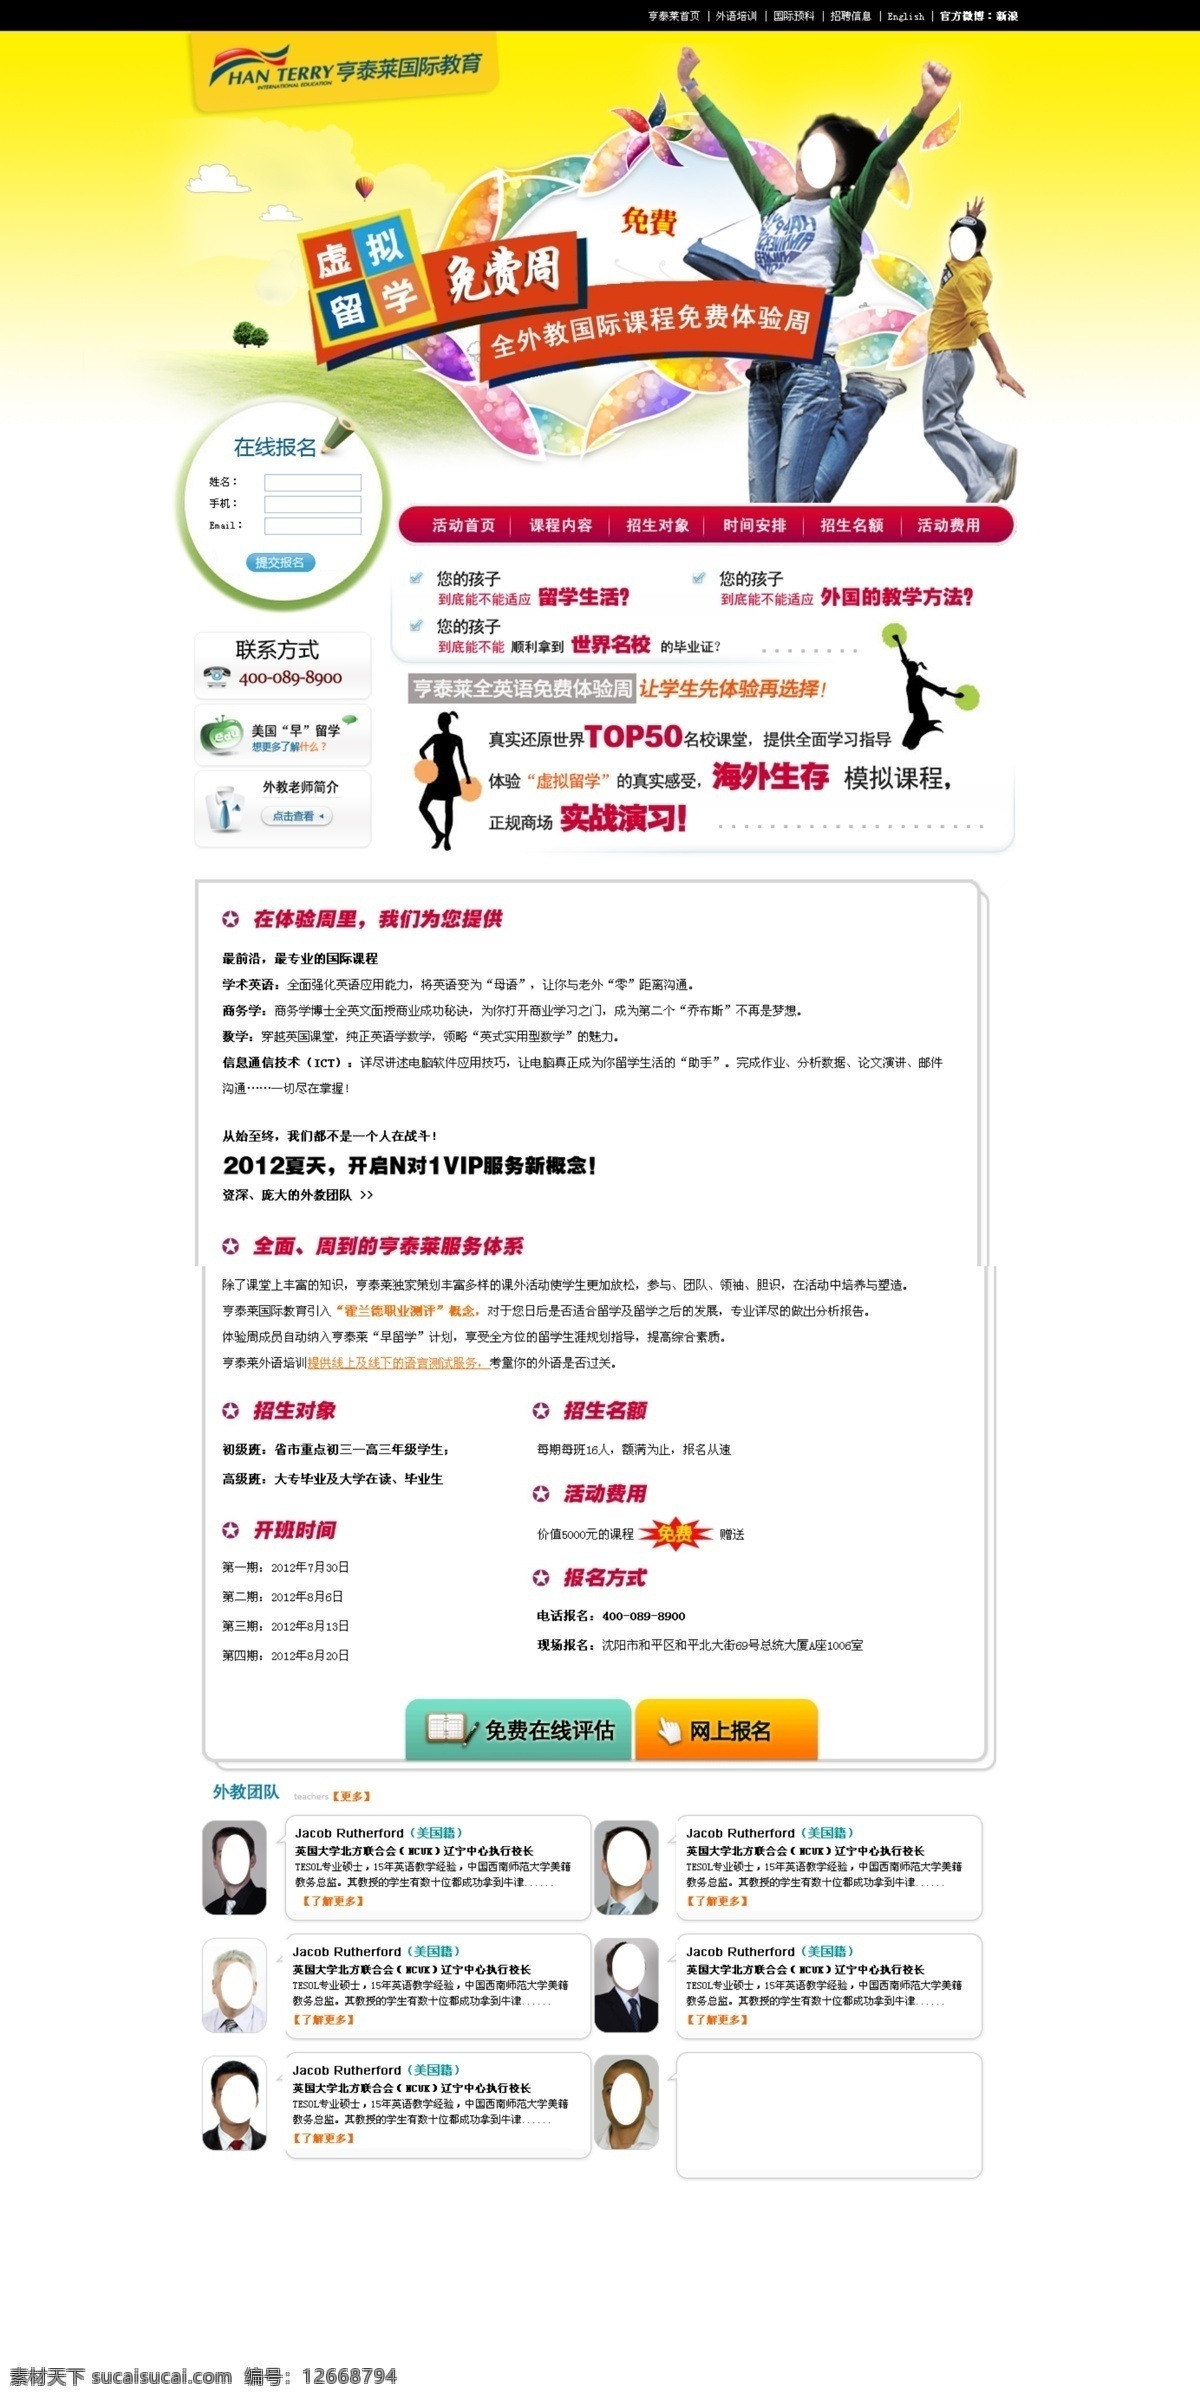 国外网站 设计素材 设计网站模板 网页模板 网页设计 中文模板 出国留学网页 外语培训网页 公司类模板 web 界面设计 网页素材 其他网页素材